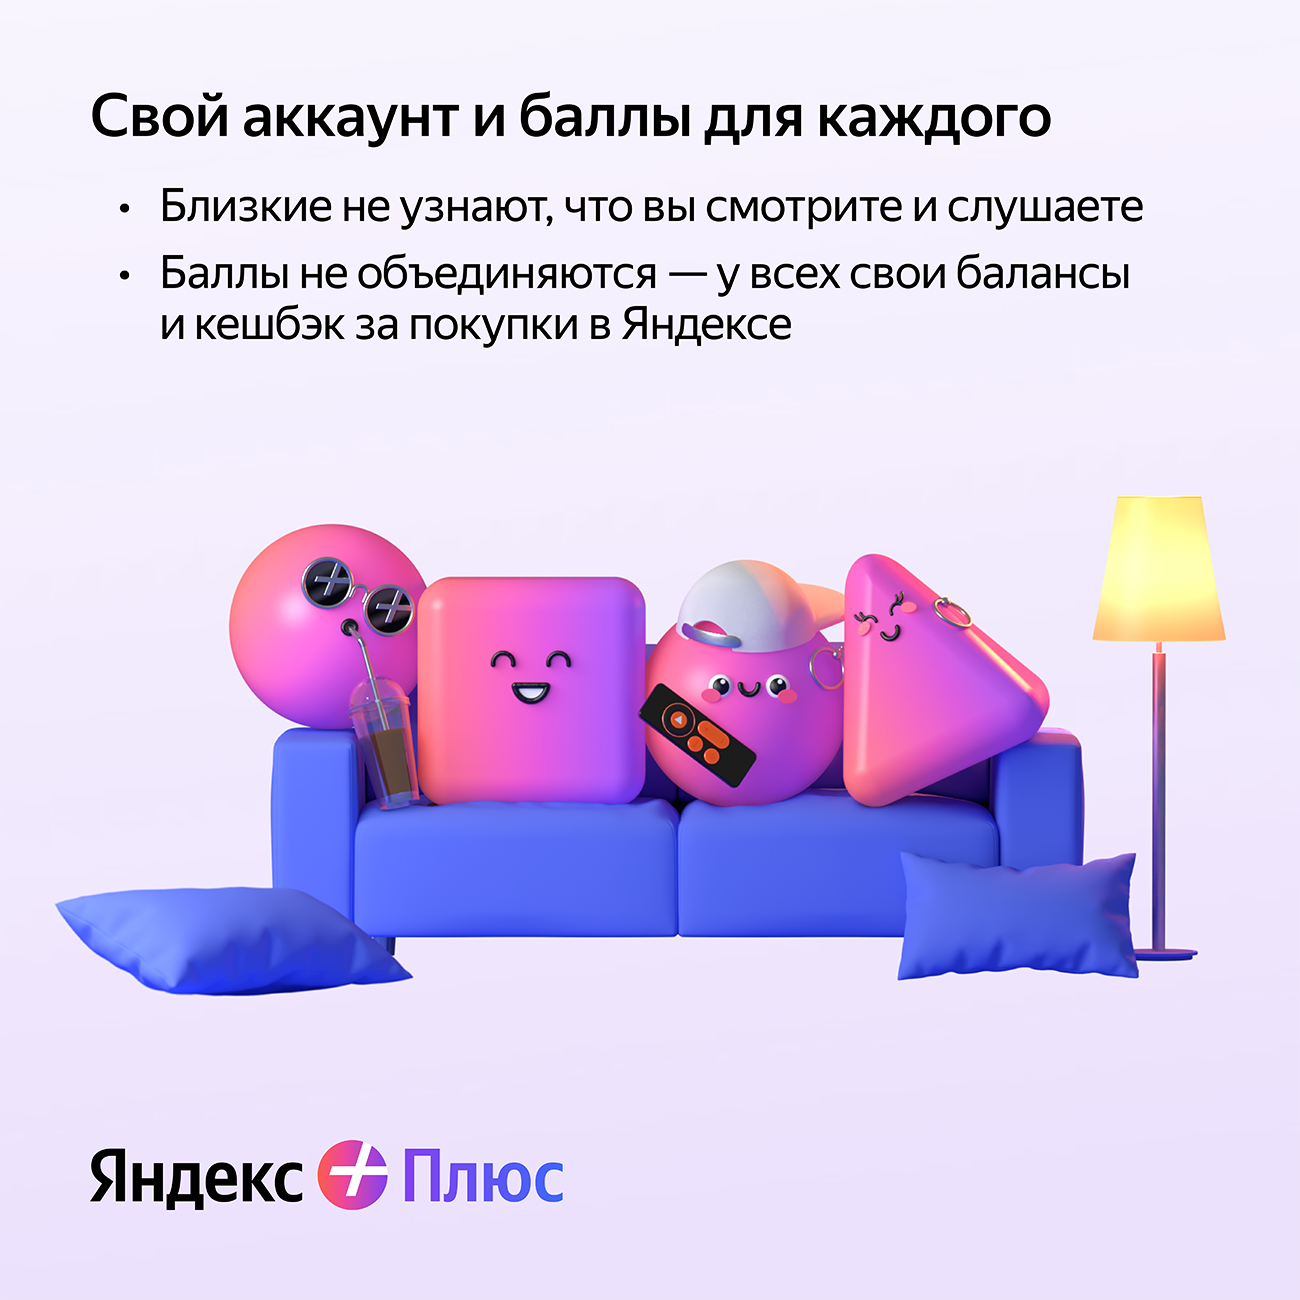 Яндекс Плюс с Амедиатекой